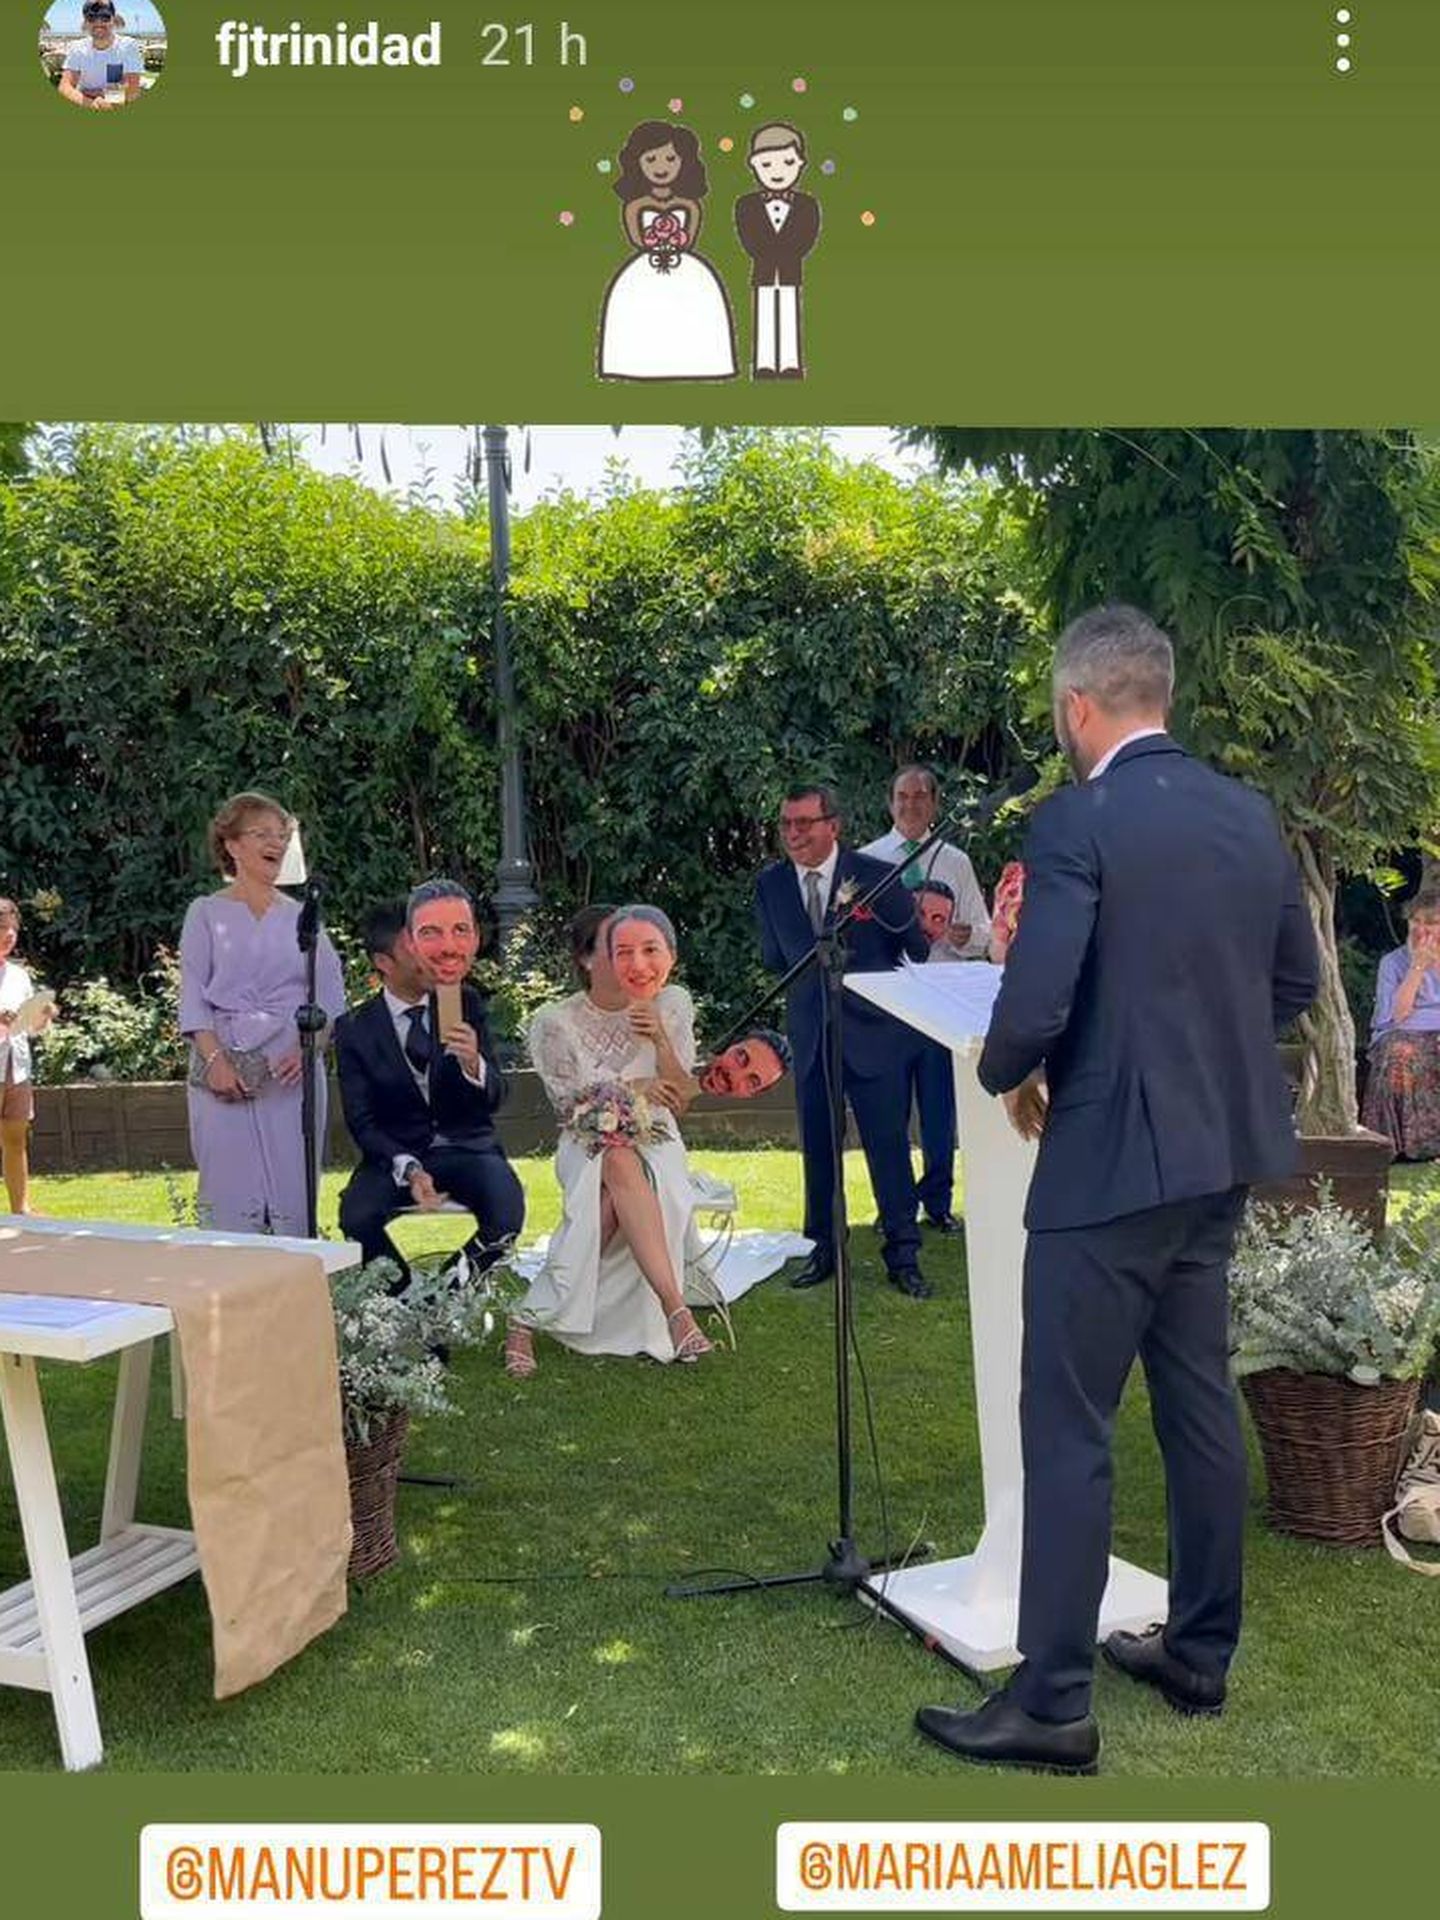 Roberto Leal ejerce como presentador en la boda de sus amigos, haciendo un cuestionario a los novios. (Instagram/@fjtrinidad)